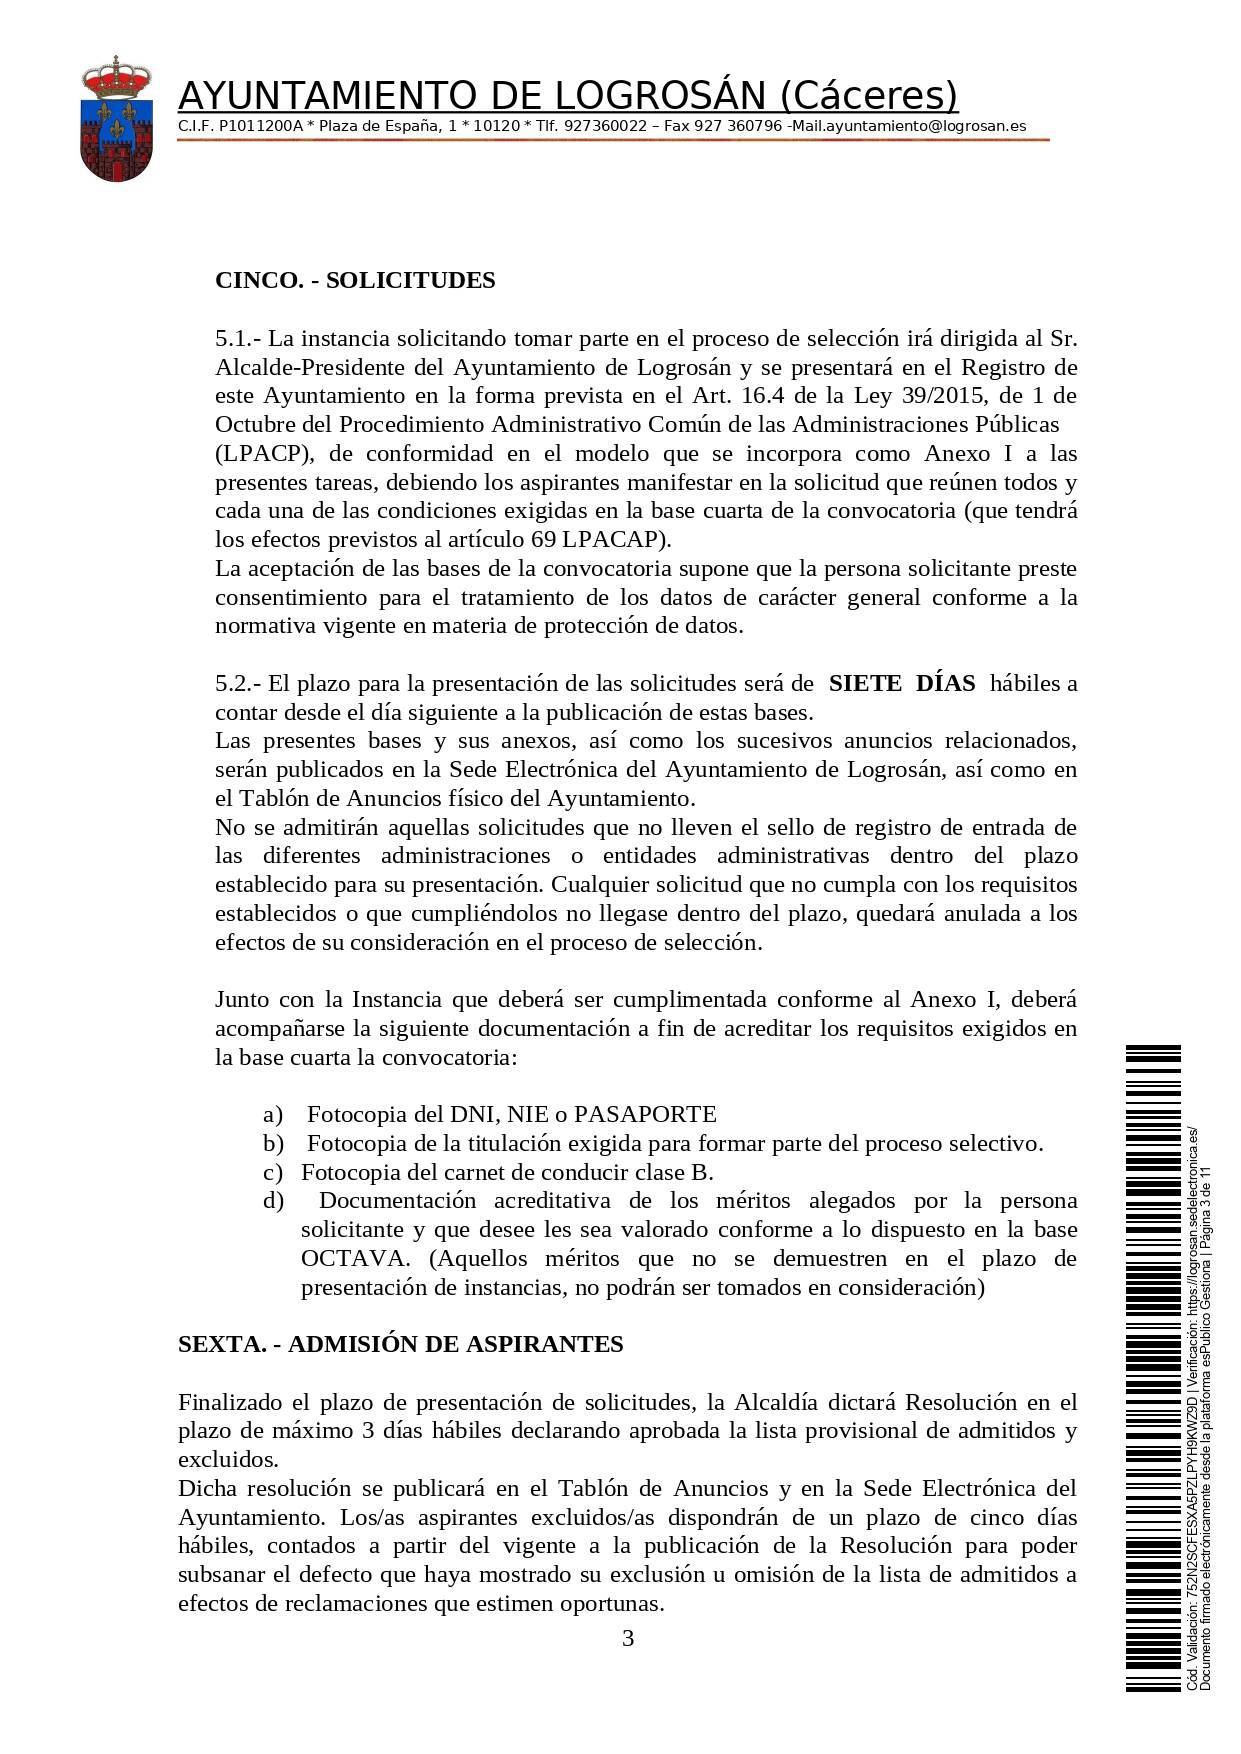 Bolsa de una alguacil (2021) - Logrosán (Cáceres) 3